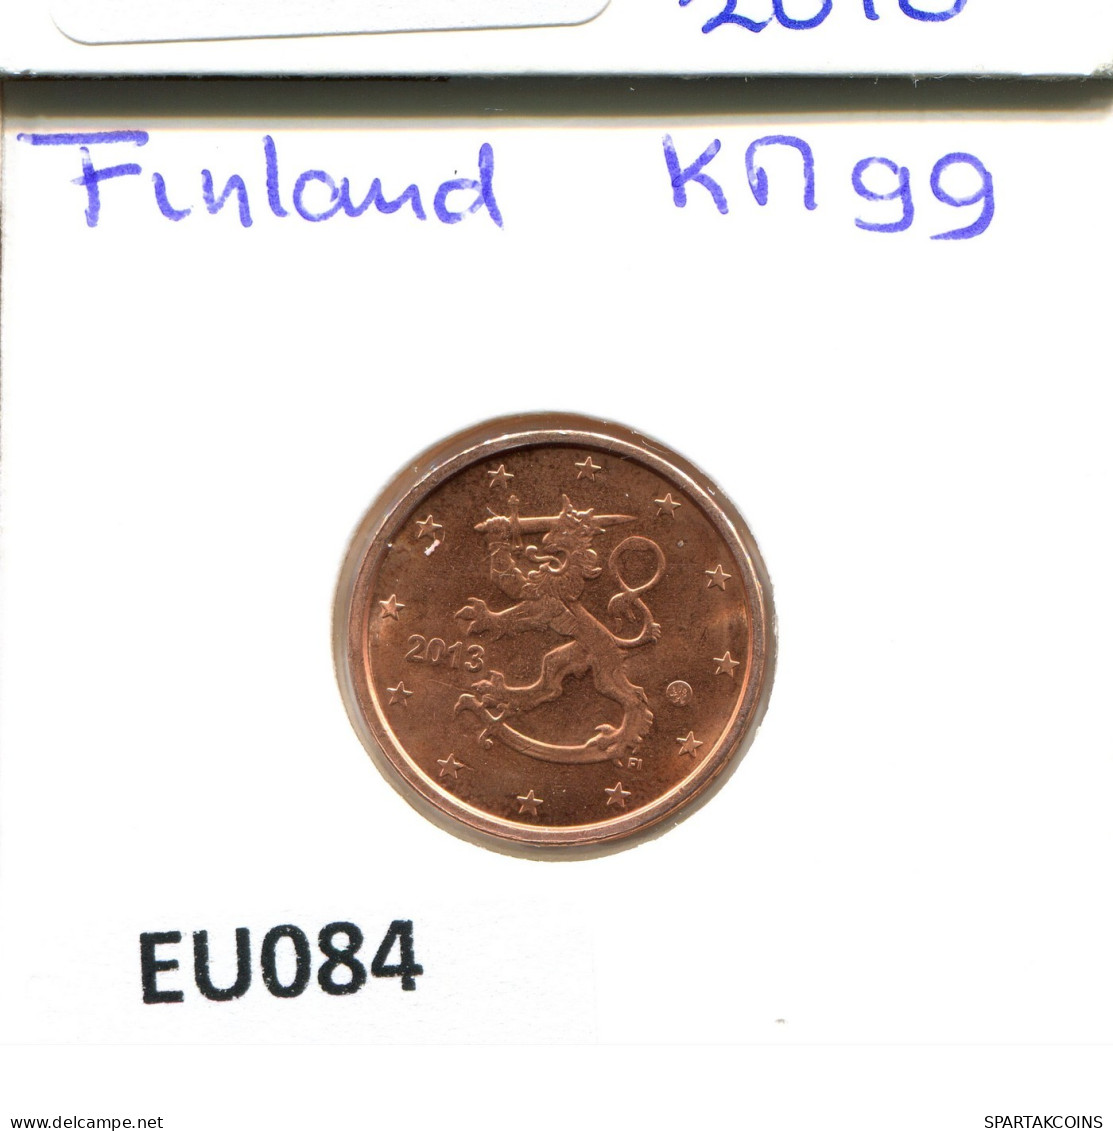 2 EURO CENTS 2013 FINLAND Coin #EU084.U.A - Finlandía